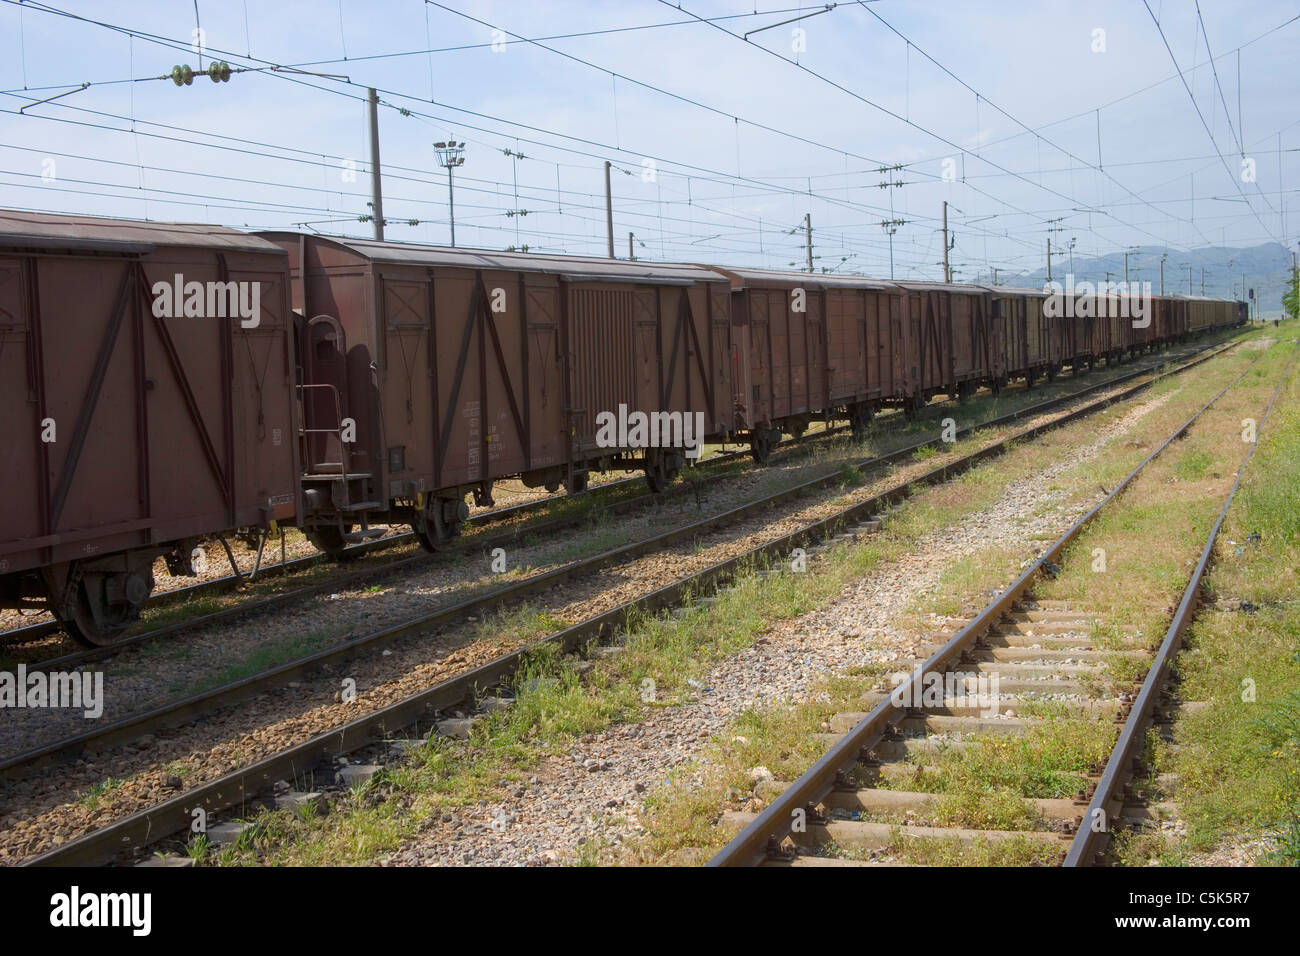 Treno merci e rotaie come visto da dentro la stazione ferroviaria, Fevzipasa, nei pressi di Gaziantep / Antep, Turchia Foto Stock